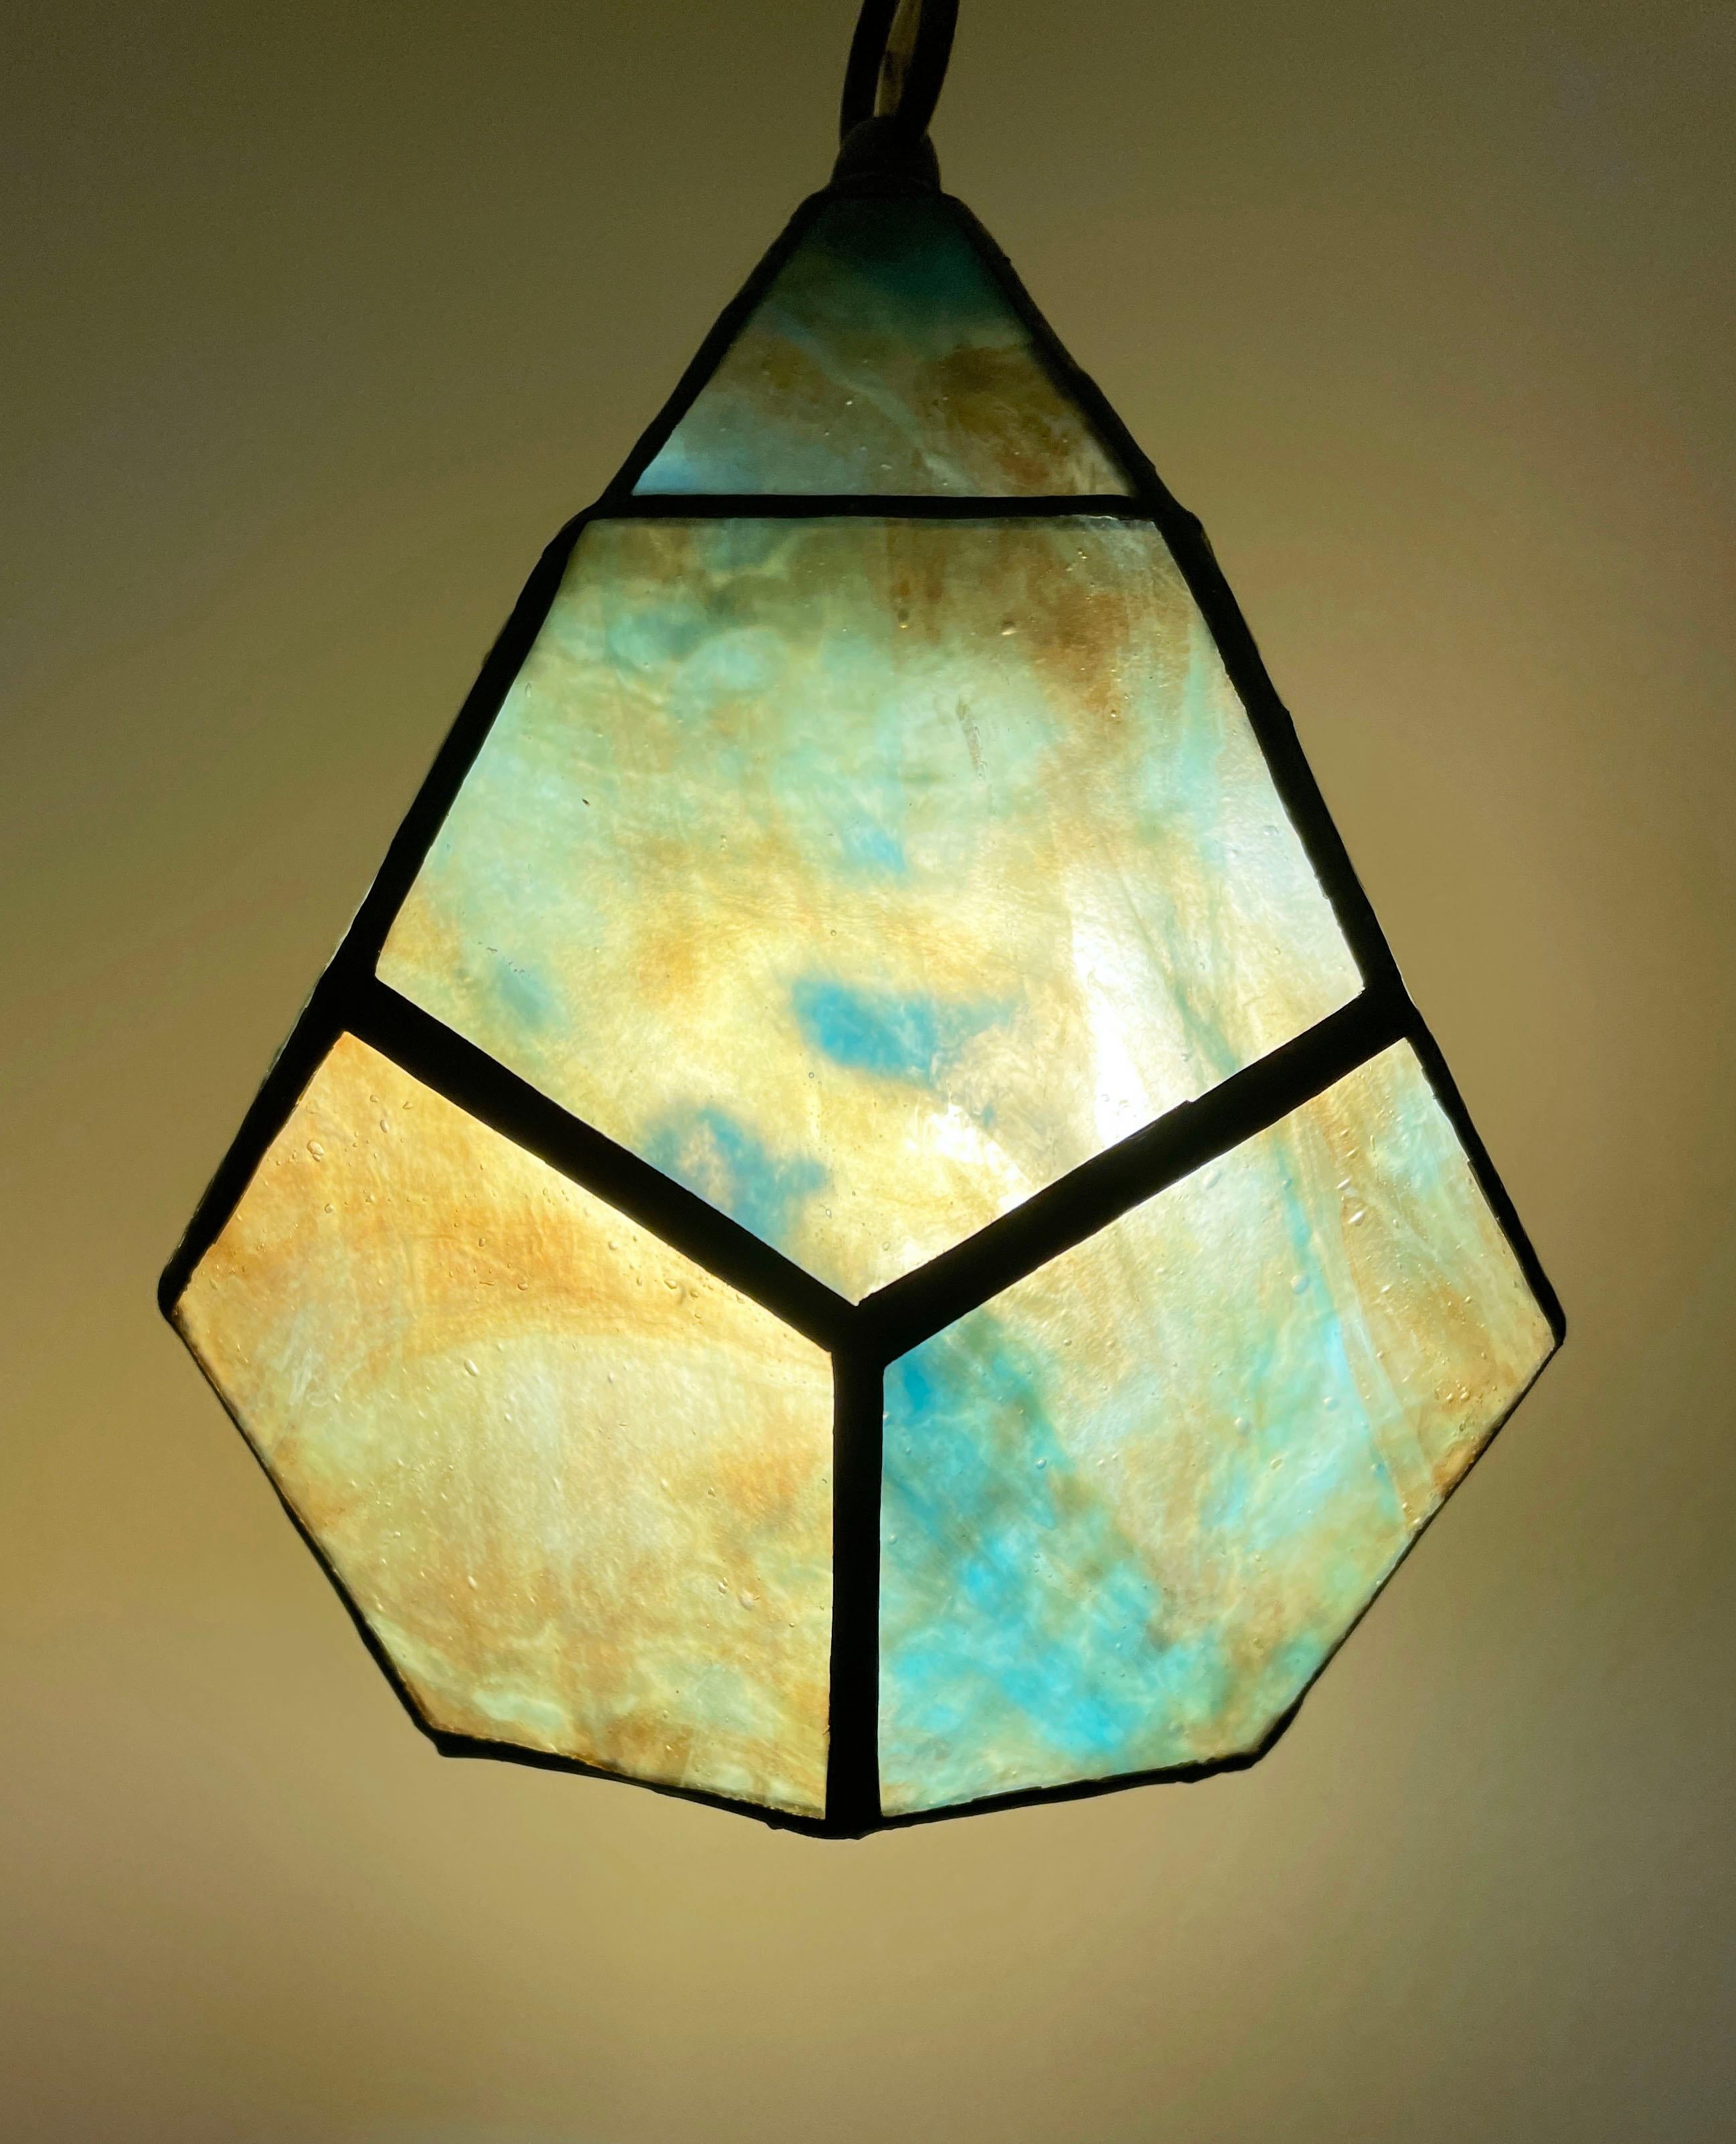 Pentagonal-Kugellaterne – Sculpture von TF Dutchman